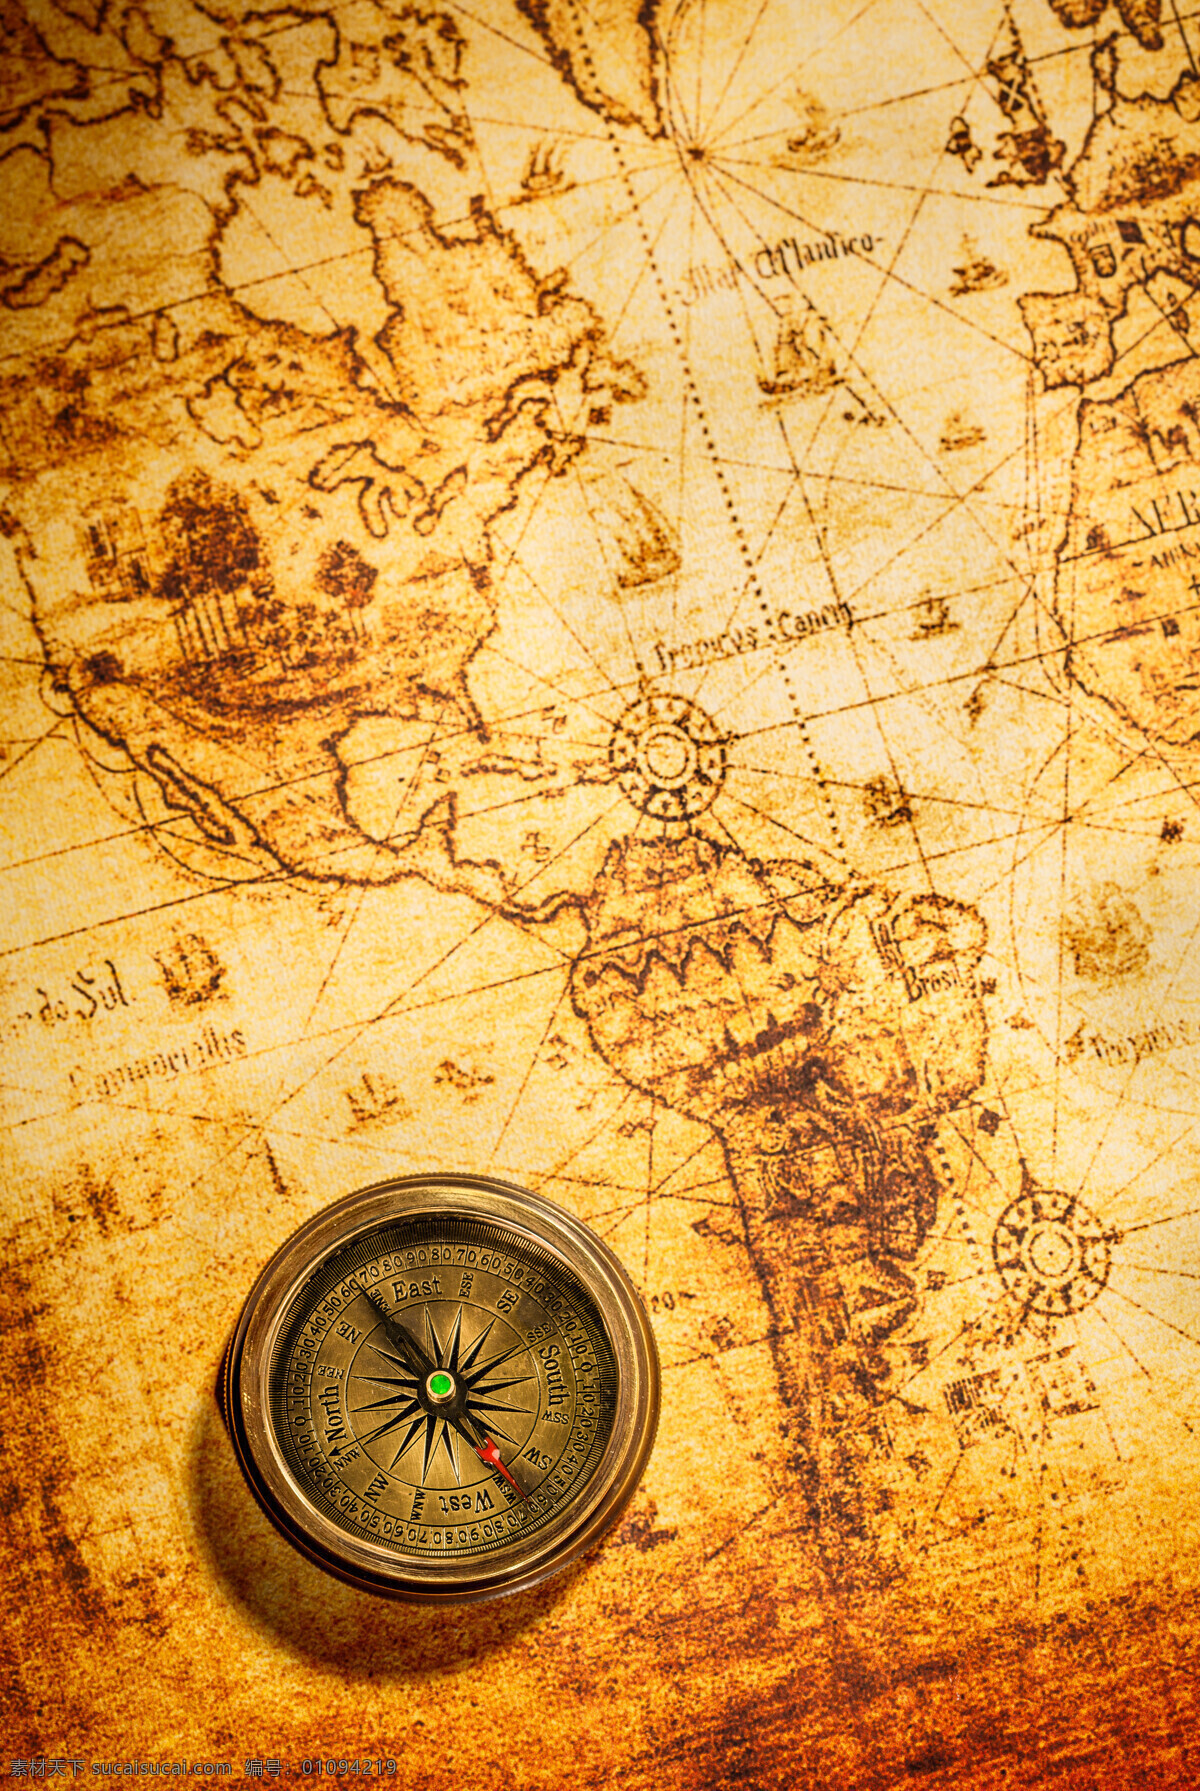 地图 上 指南针 复古怀旧 航海地图 航海用品 其他类别 生活百科 黄色